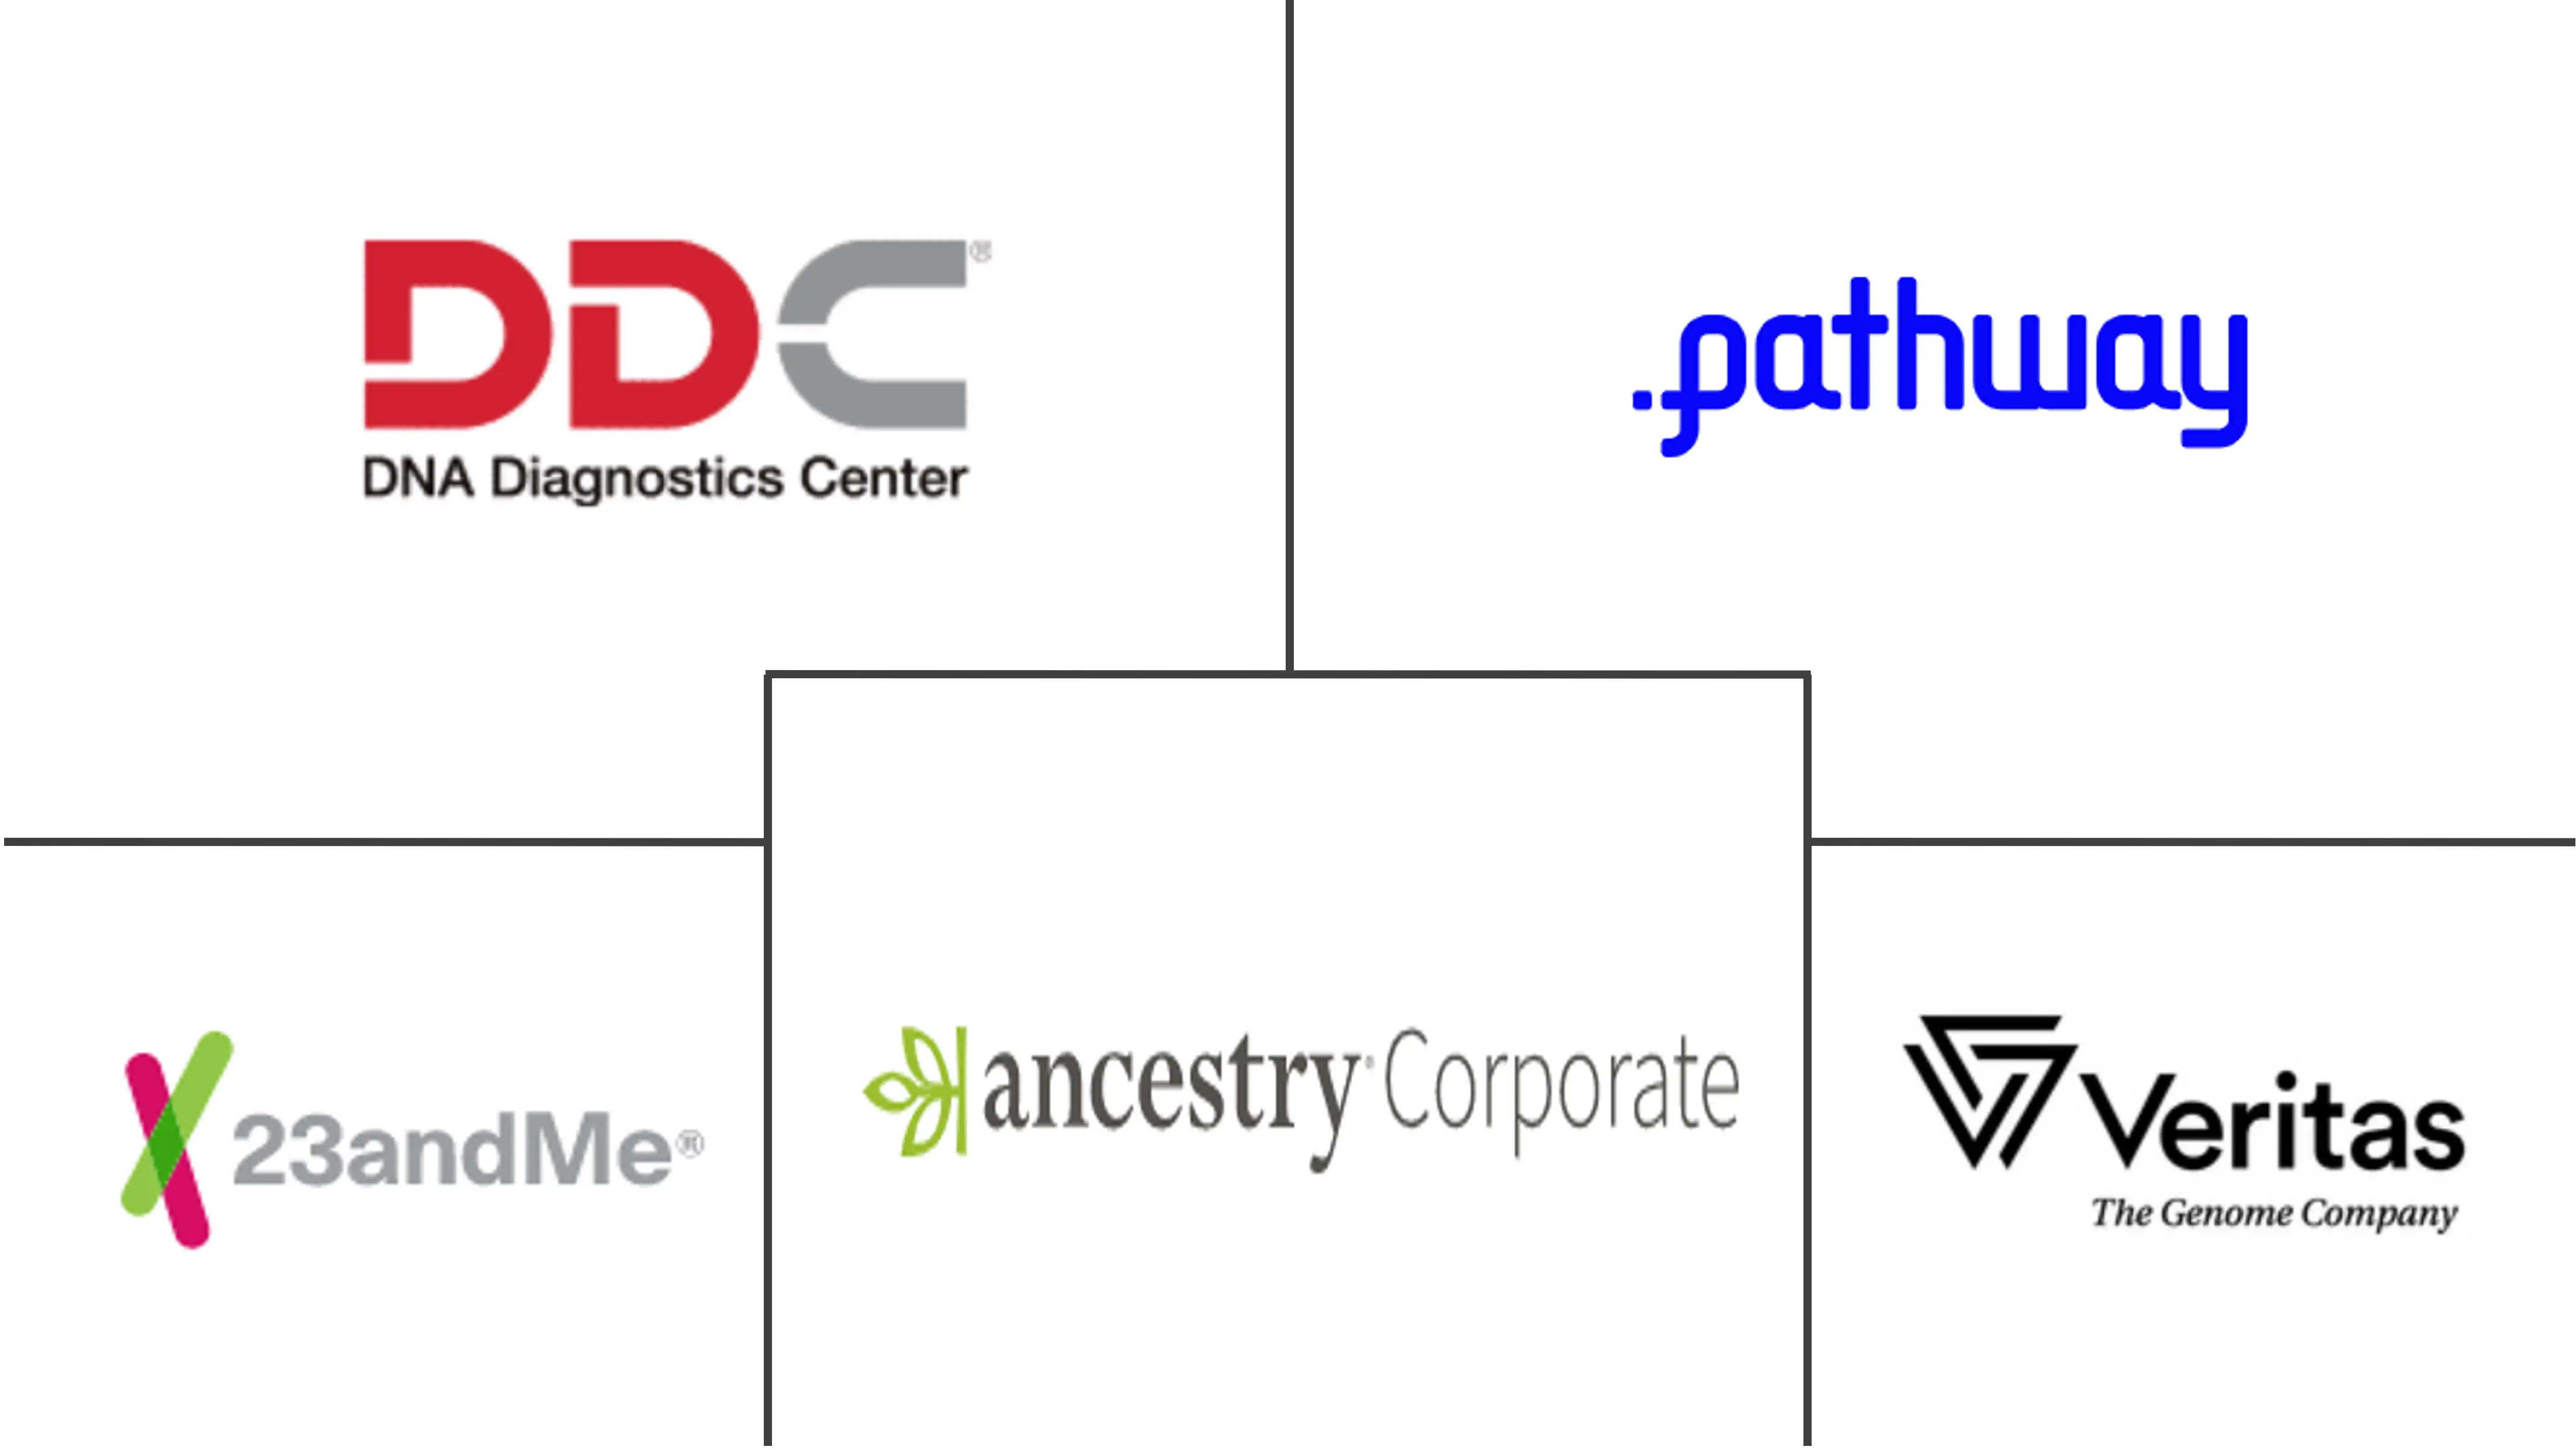 Marché mondial des kits de tests ADN DTC (directement au consommateur)